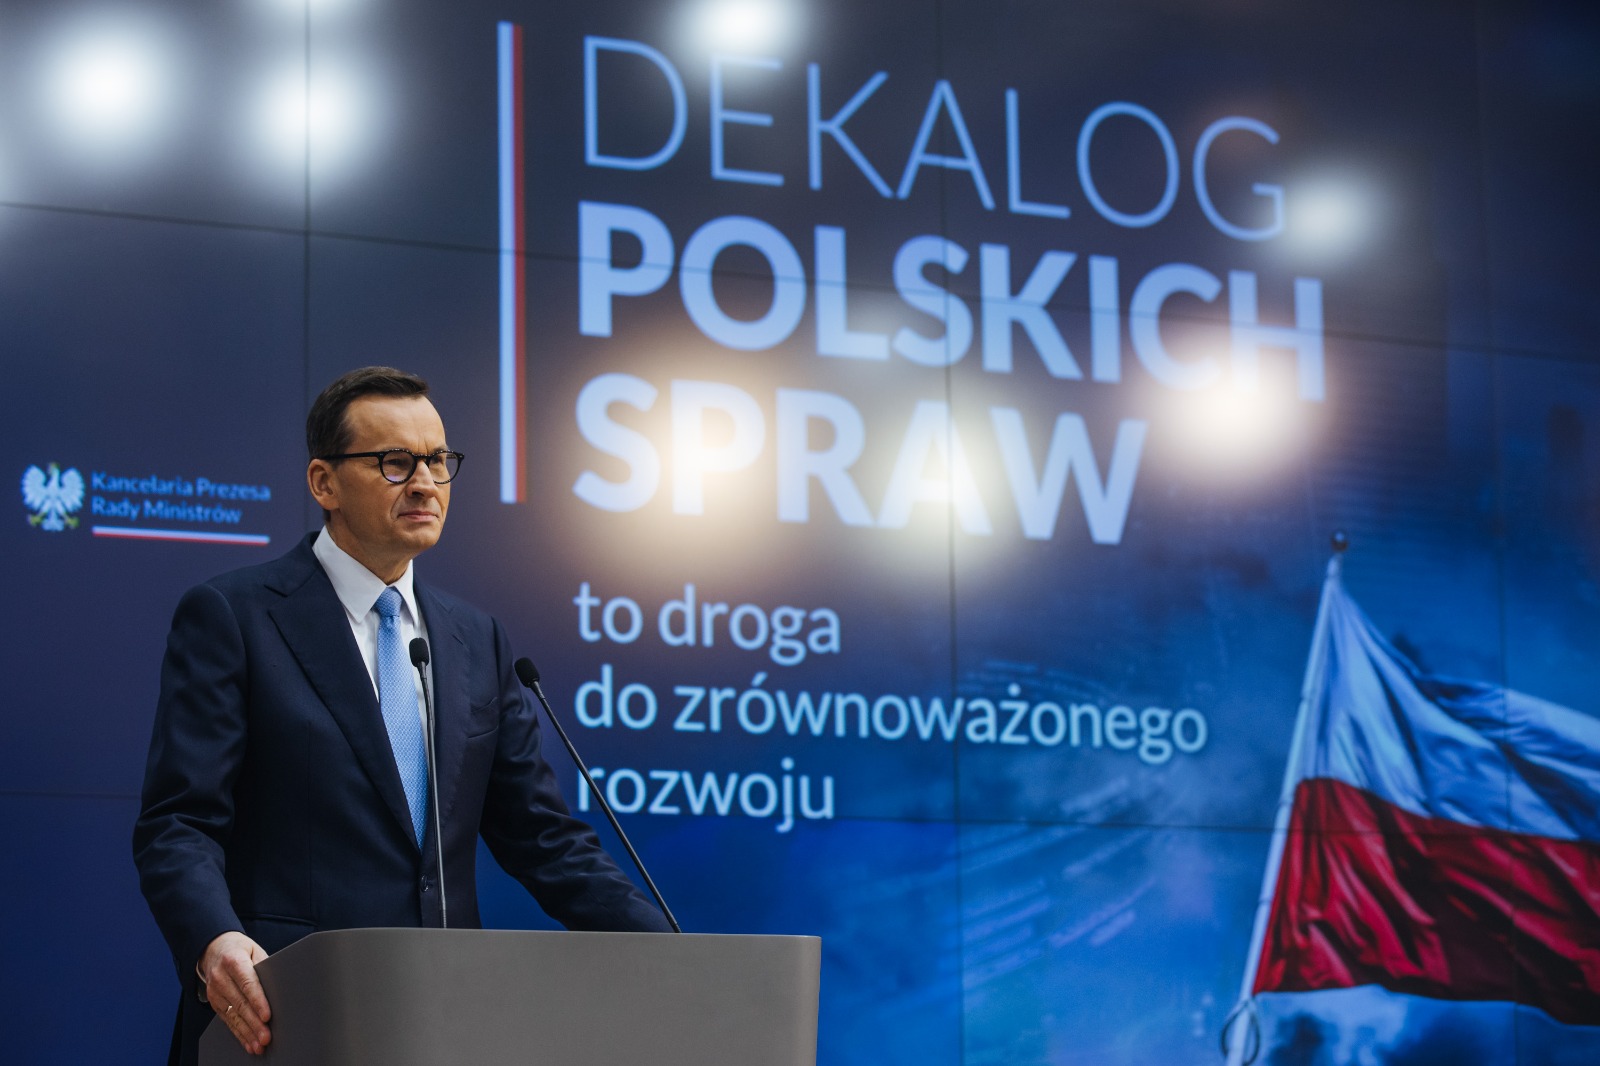 Dekalog Polskich Spraw